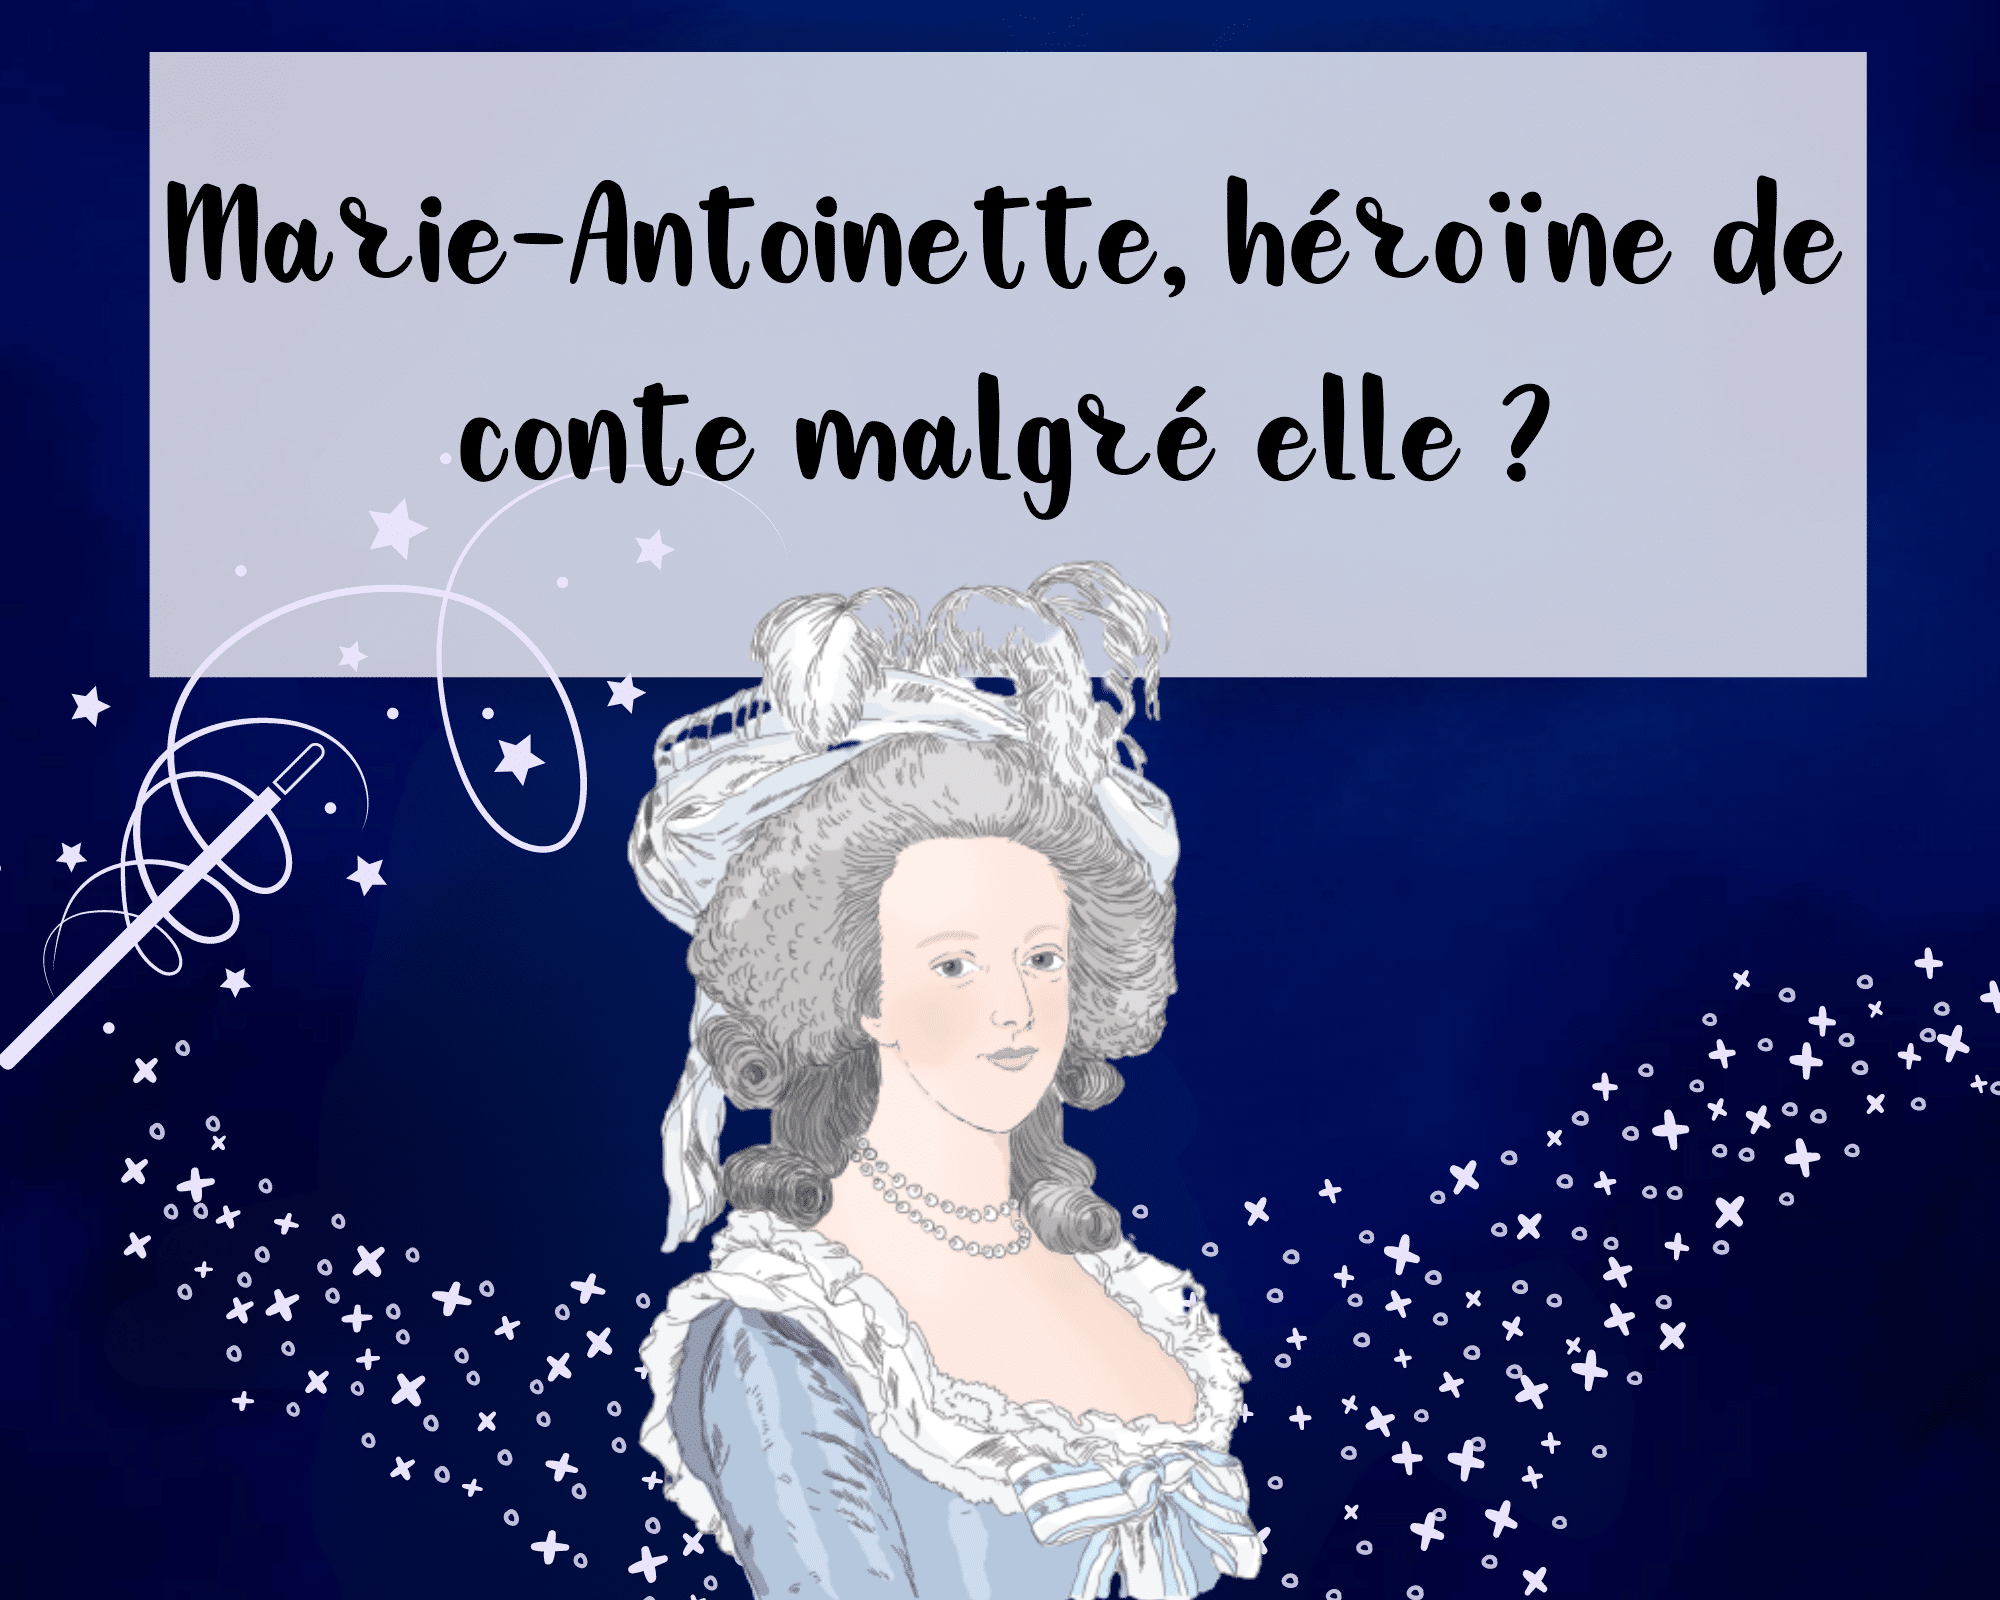 De la magie entoure Marie-Antoinette, qui serait une héroïne de conte malgré elle ?